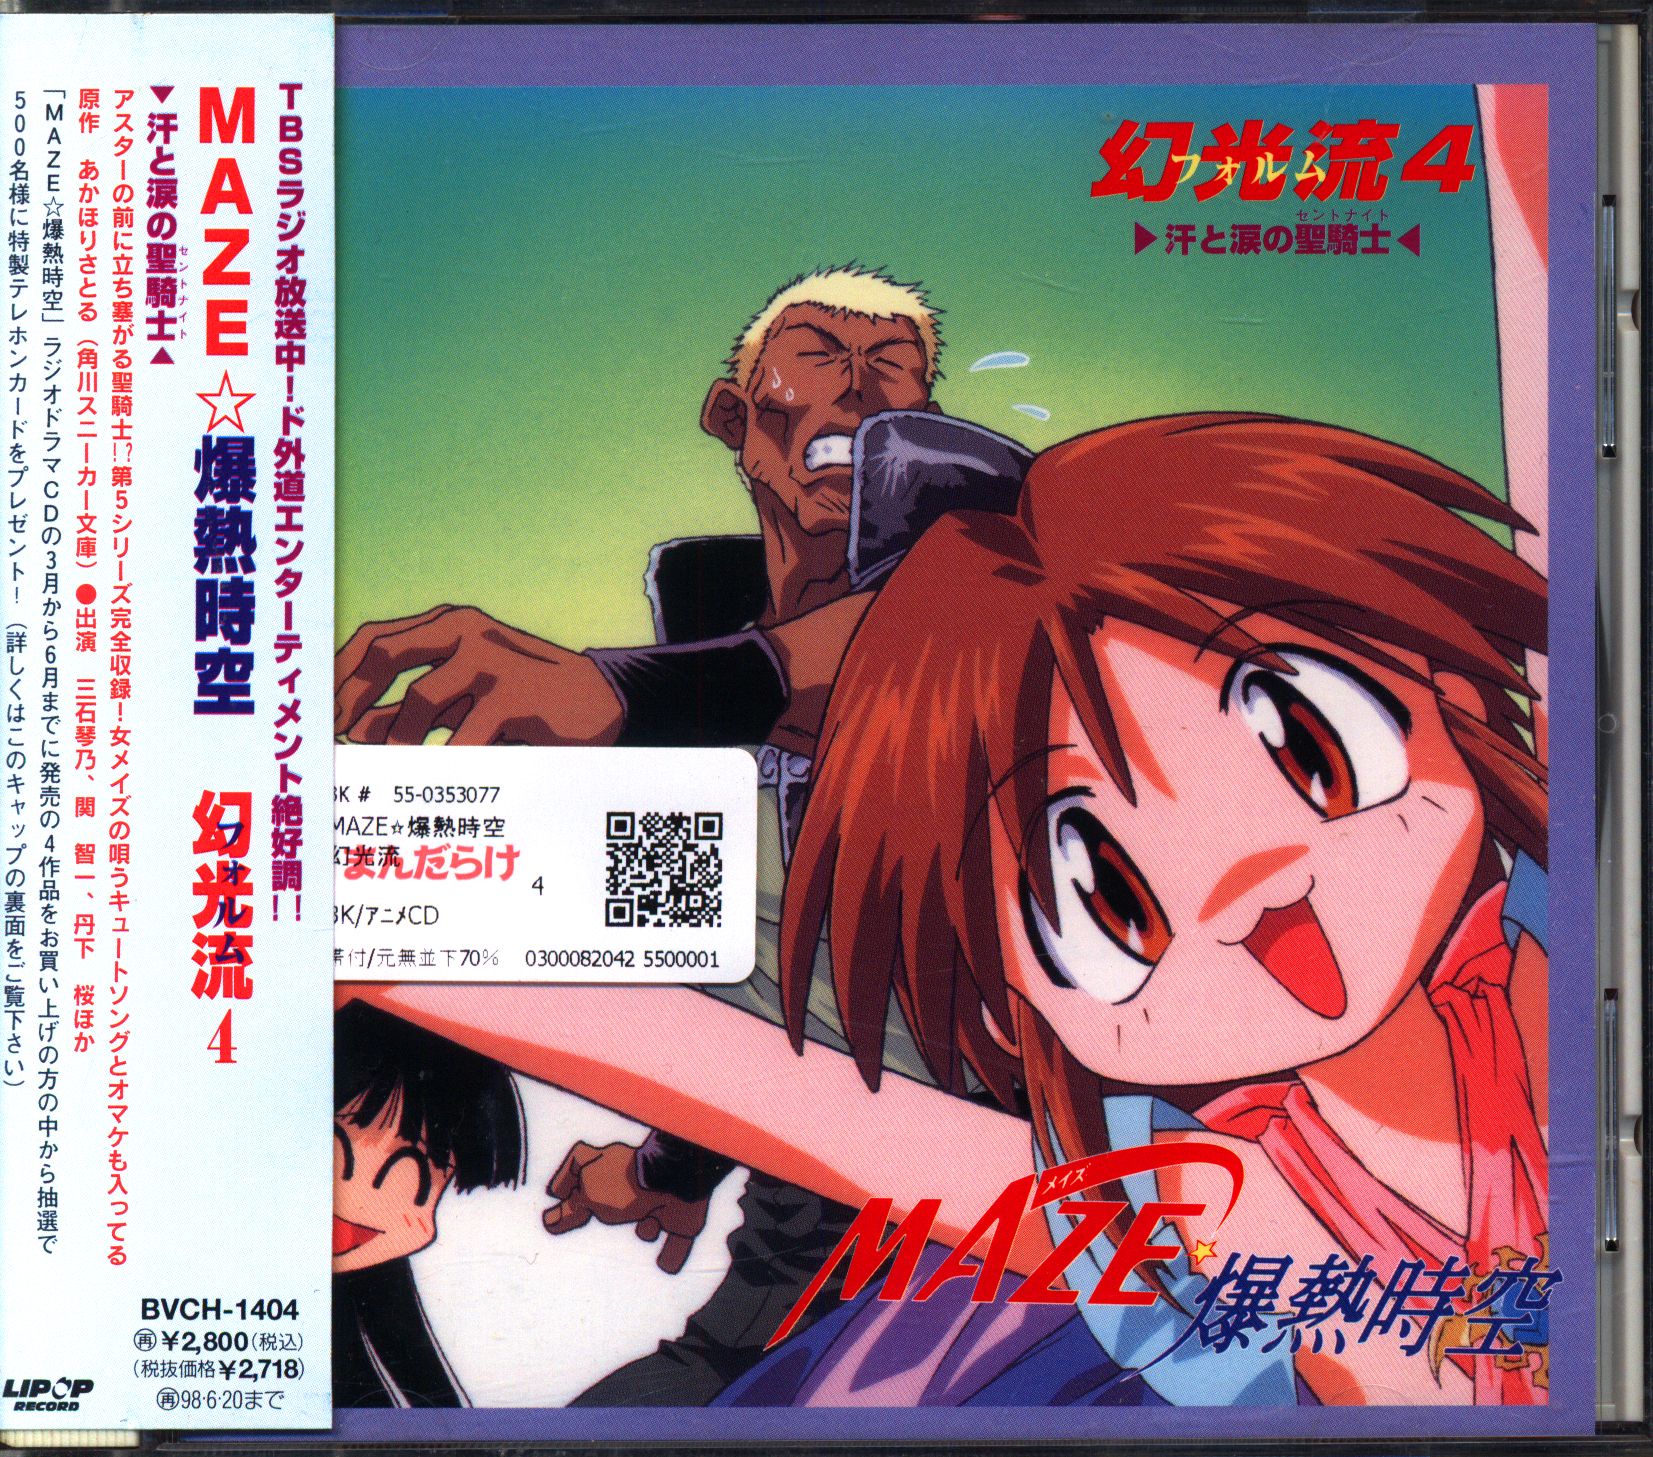 Anime CD MAZE☆ Bakunetsu Jikuu Holy Knight of Sweat and Tears